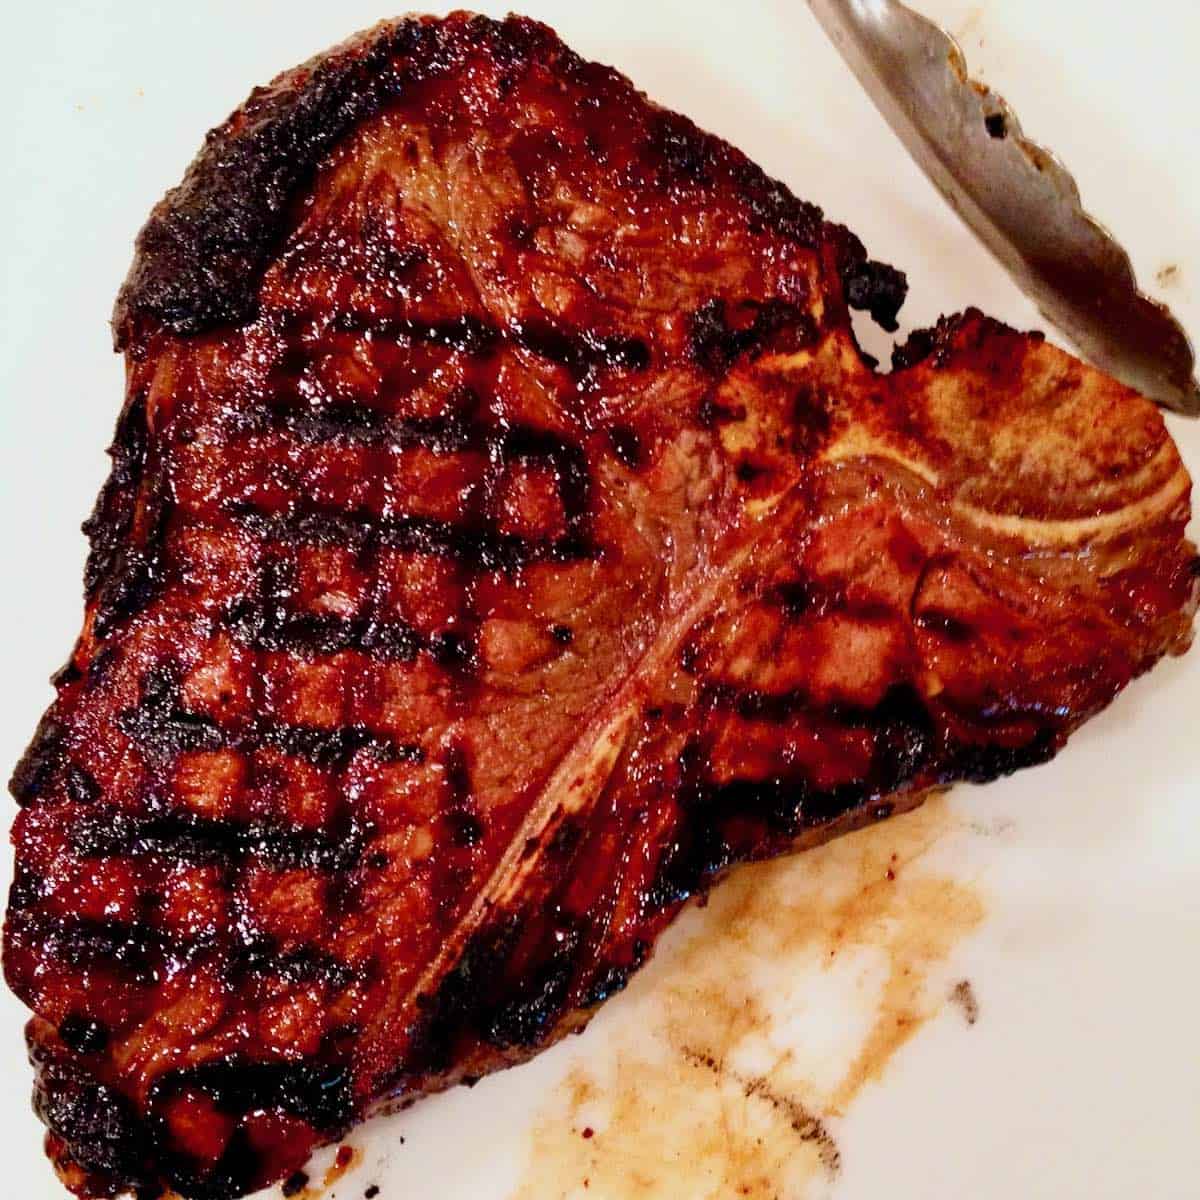 Miso marinated porterhouse steak.